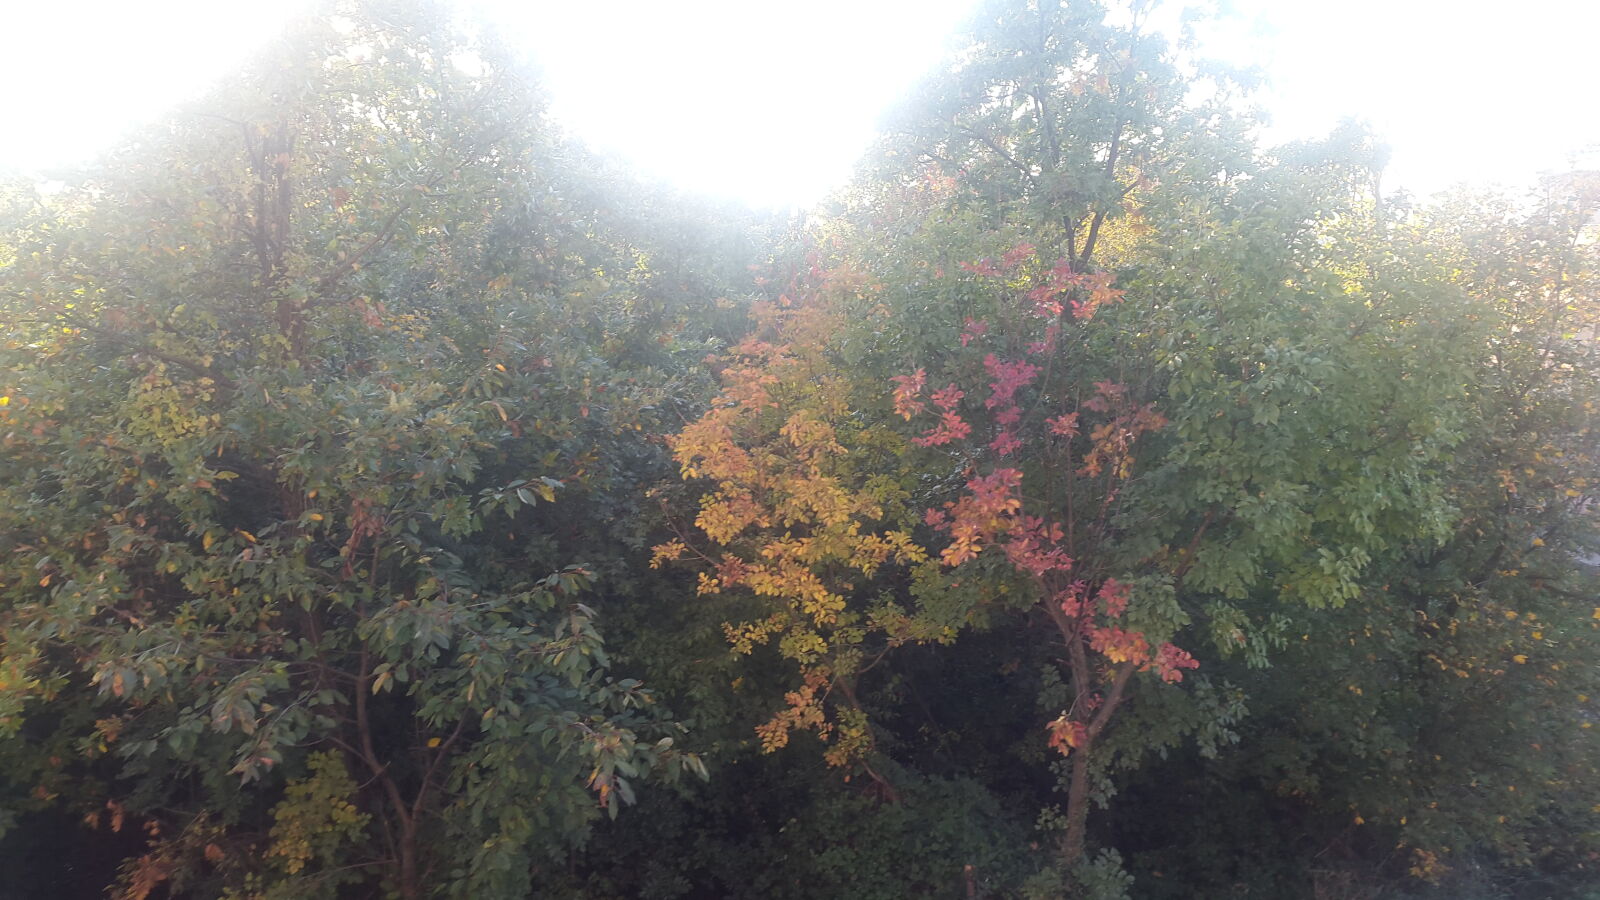 Samsung Galaxy Alpha sample photo. Autmn, autmn, forest, autumn photography